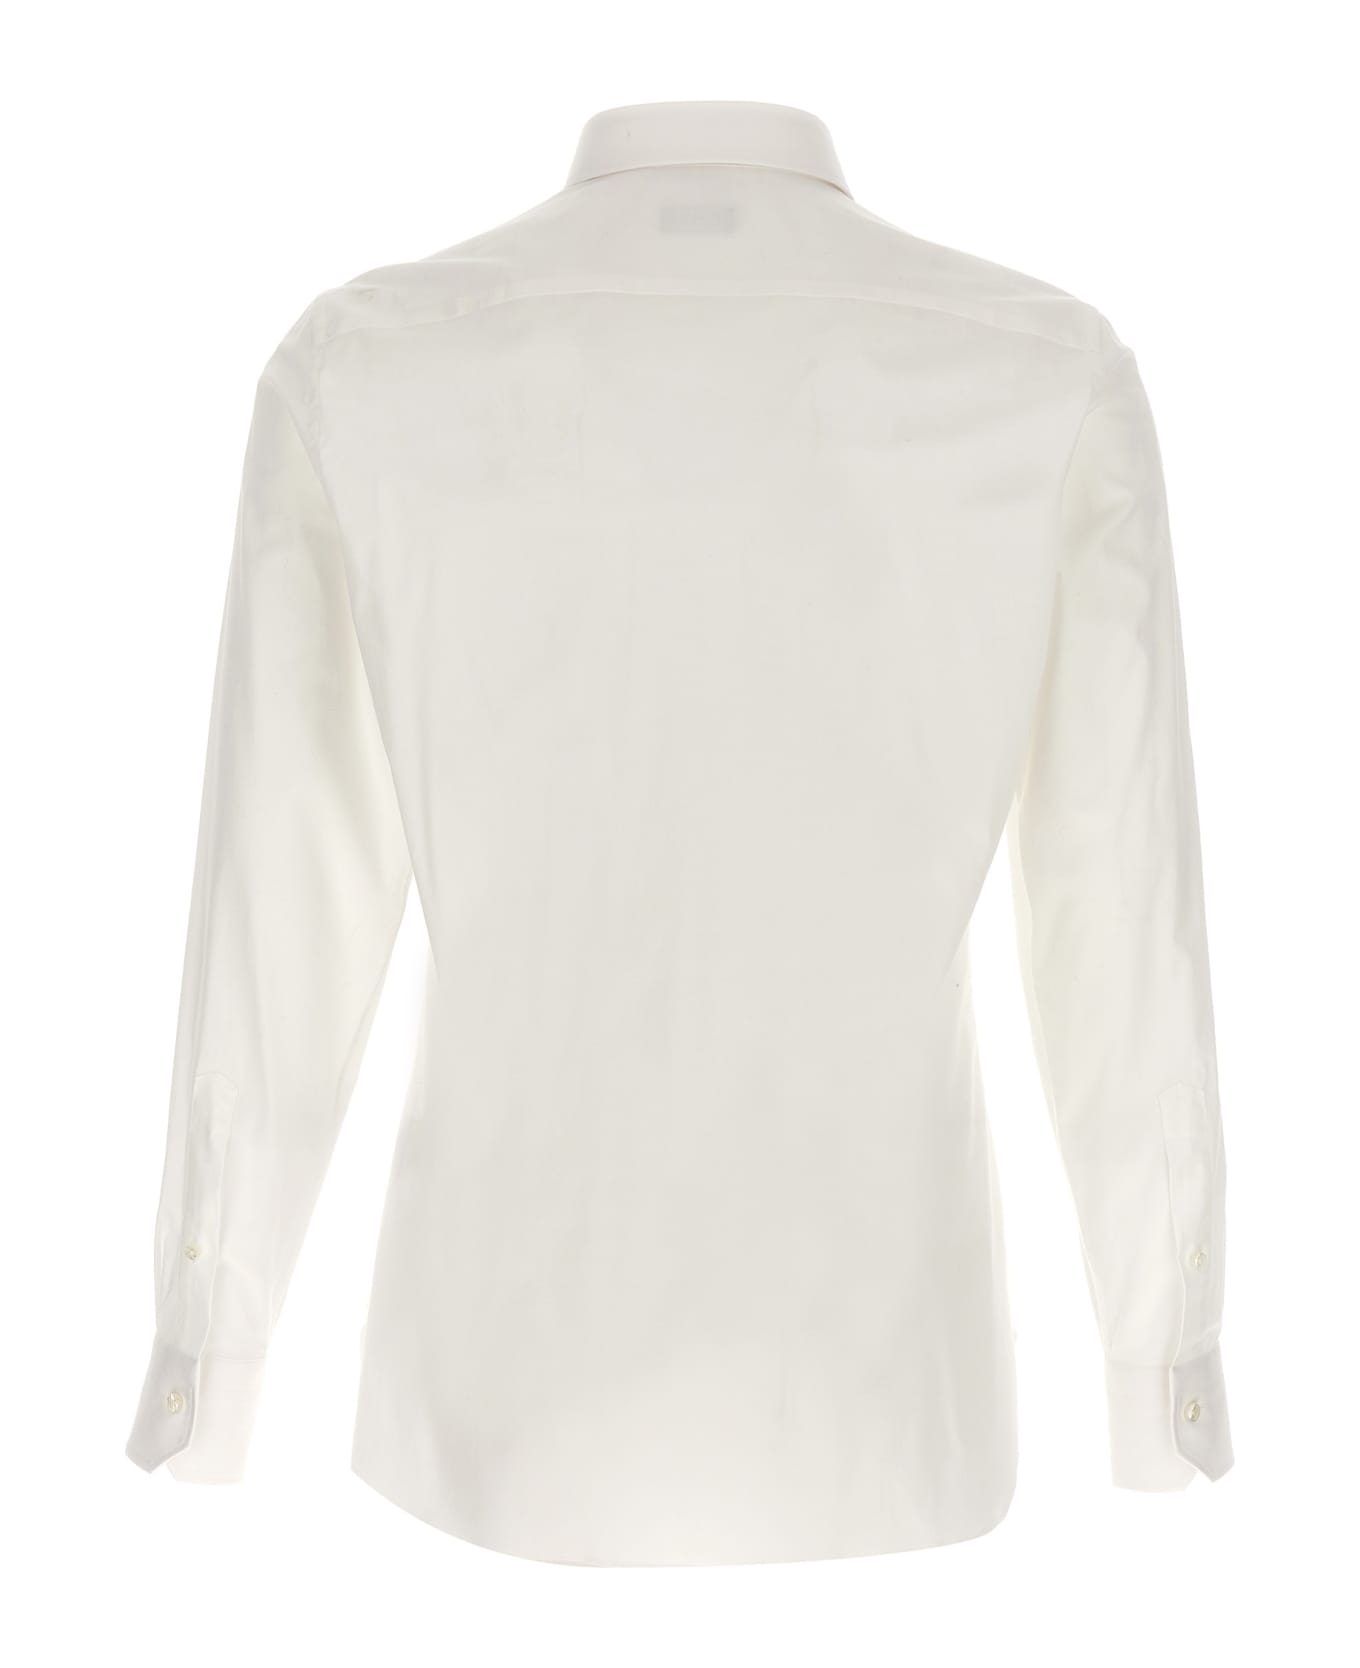 Zegna Stretch Cotton Shirt - White シャツ